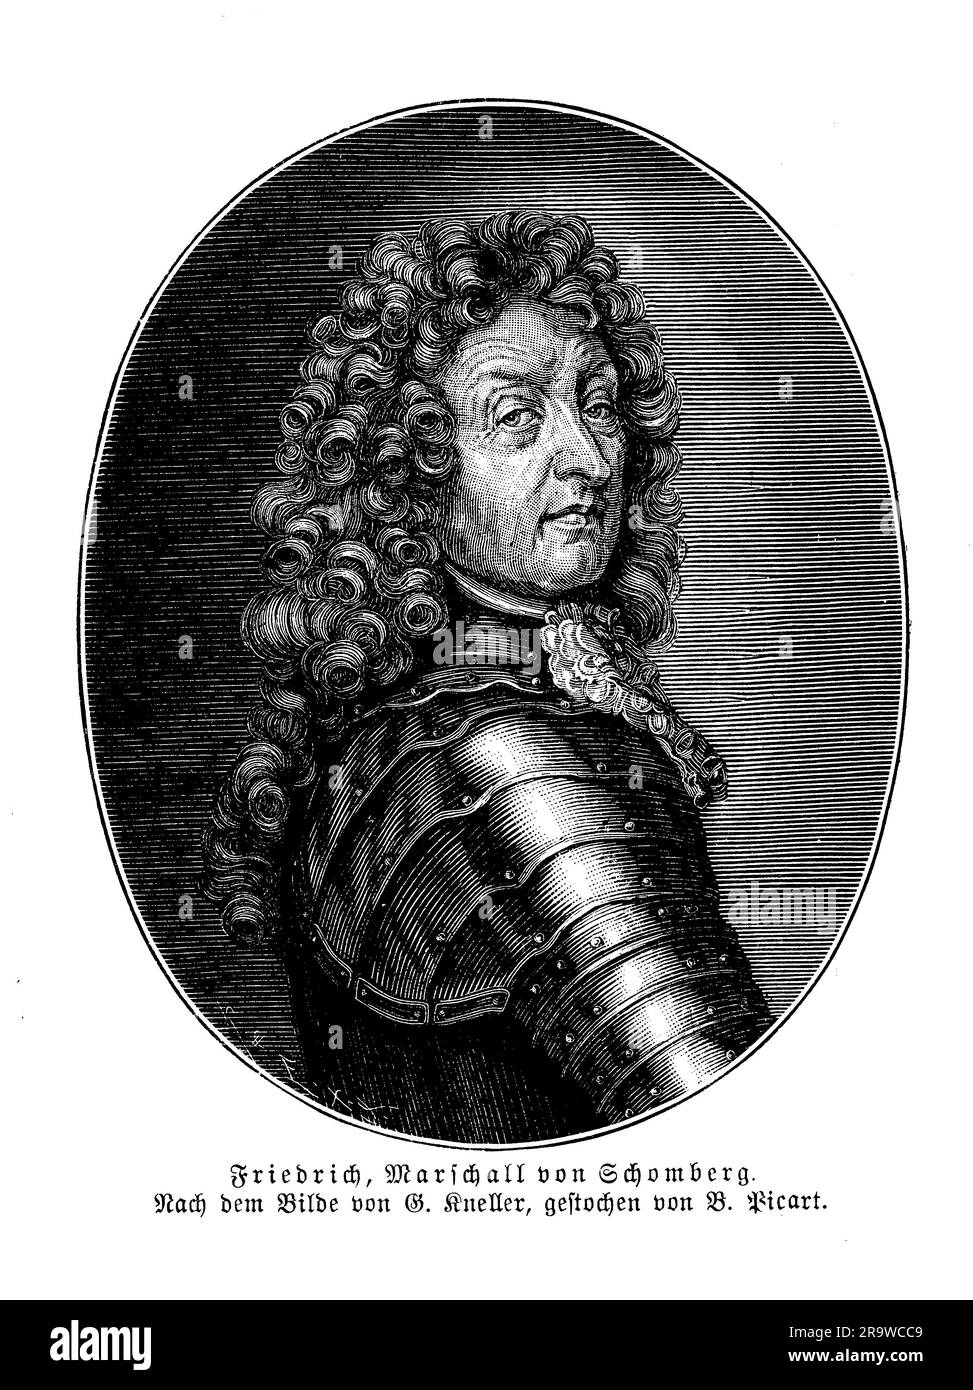 Friedrich von Schomberg, noto anche come Frédéric Armand de Schomberg, fu un soldato e statista di origine tedesca che prestò servizio negli eserciti di diversi paesi europei durante il XVII secolo. Iniziò la sua carriera militare al servizio della Repubblica delle sette Province Unite, e in seguito servì come generale negli eserciti di Francia e Portogallo. Schomberg è meglio conosciuto per il suo ruolo nella Gloriosa Rivoluzione del 1688, quando guidò un esercito di soldati inglesi, olandesi e ugonotti contro Giacomo II a sostegno di Guglielmo d'Orange. Fu successivamente nominato comandante in capo dell'esercito di Guglielmo in Irlanda Foto Stock